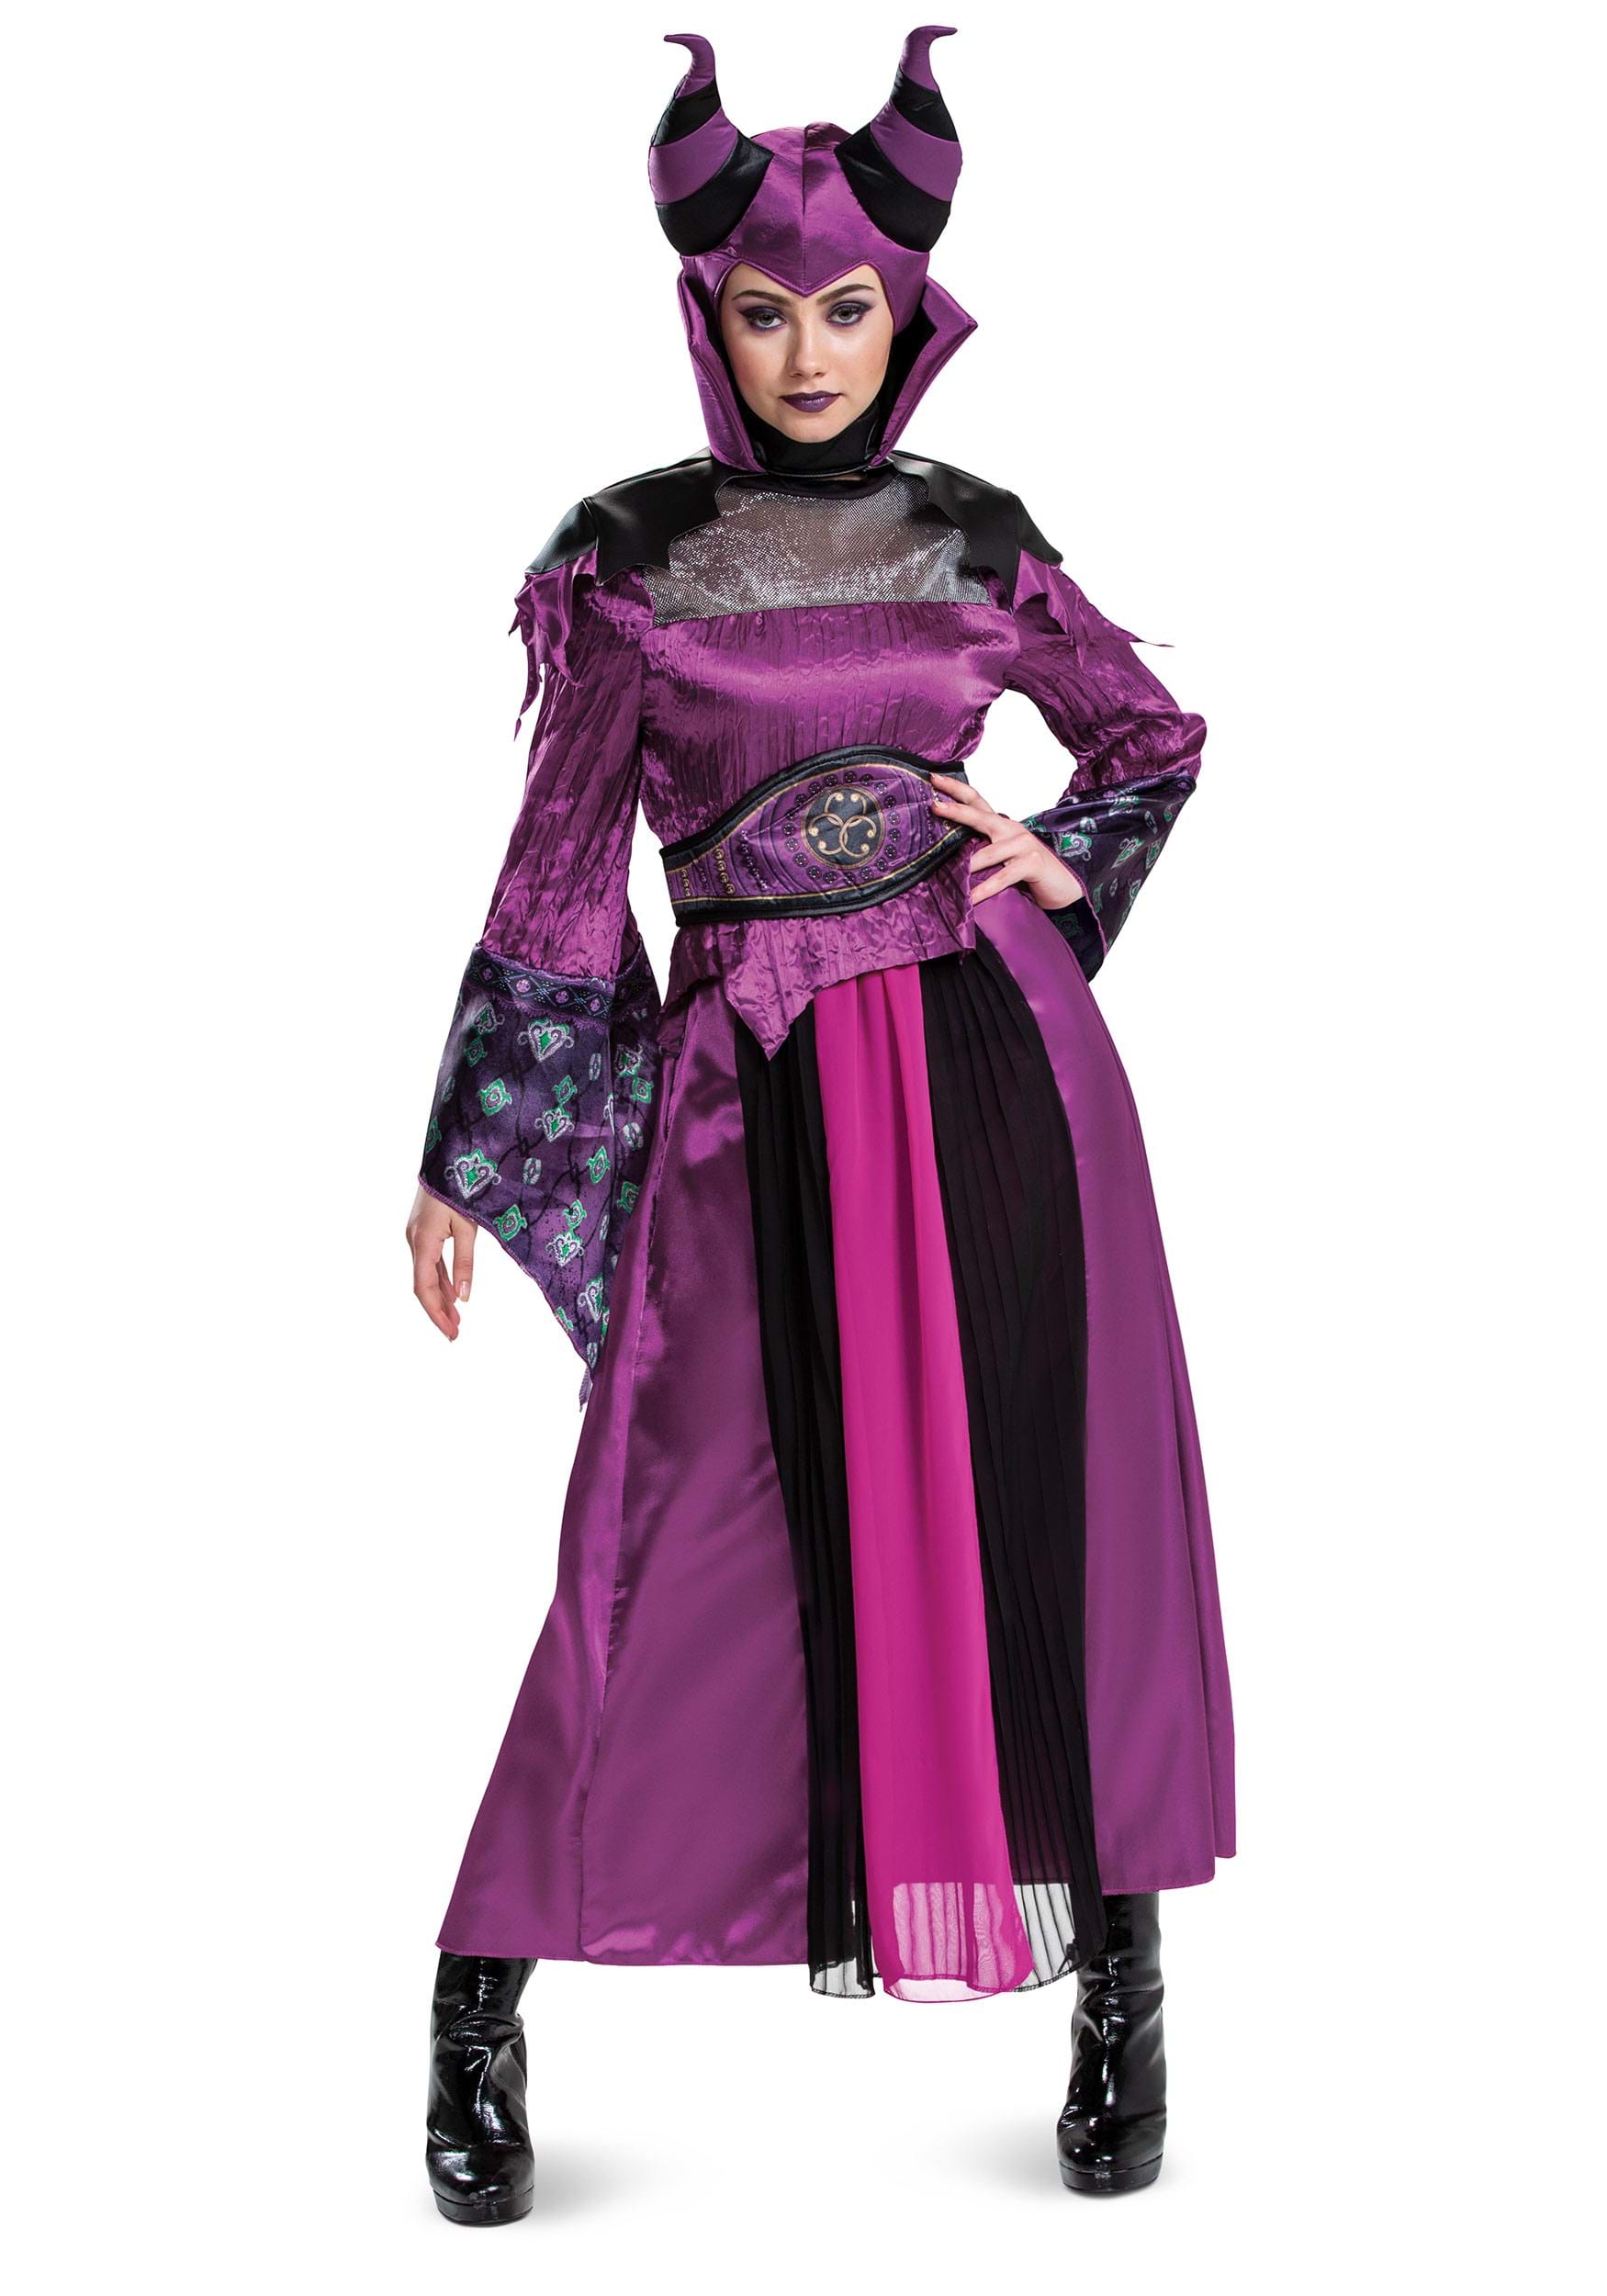 Image of Women's Descendants Maleficent Costume ID DI121119-S